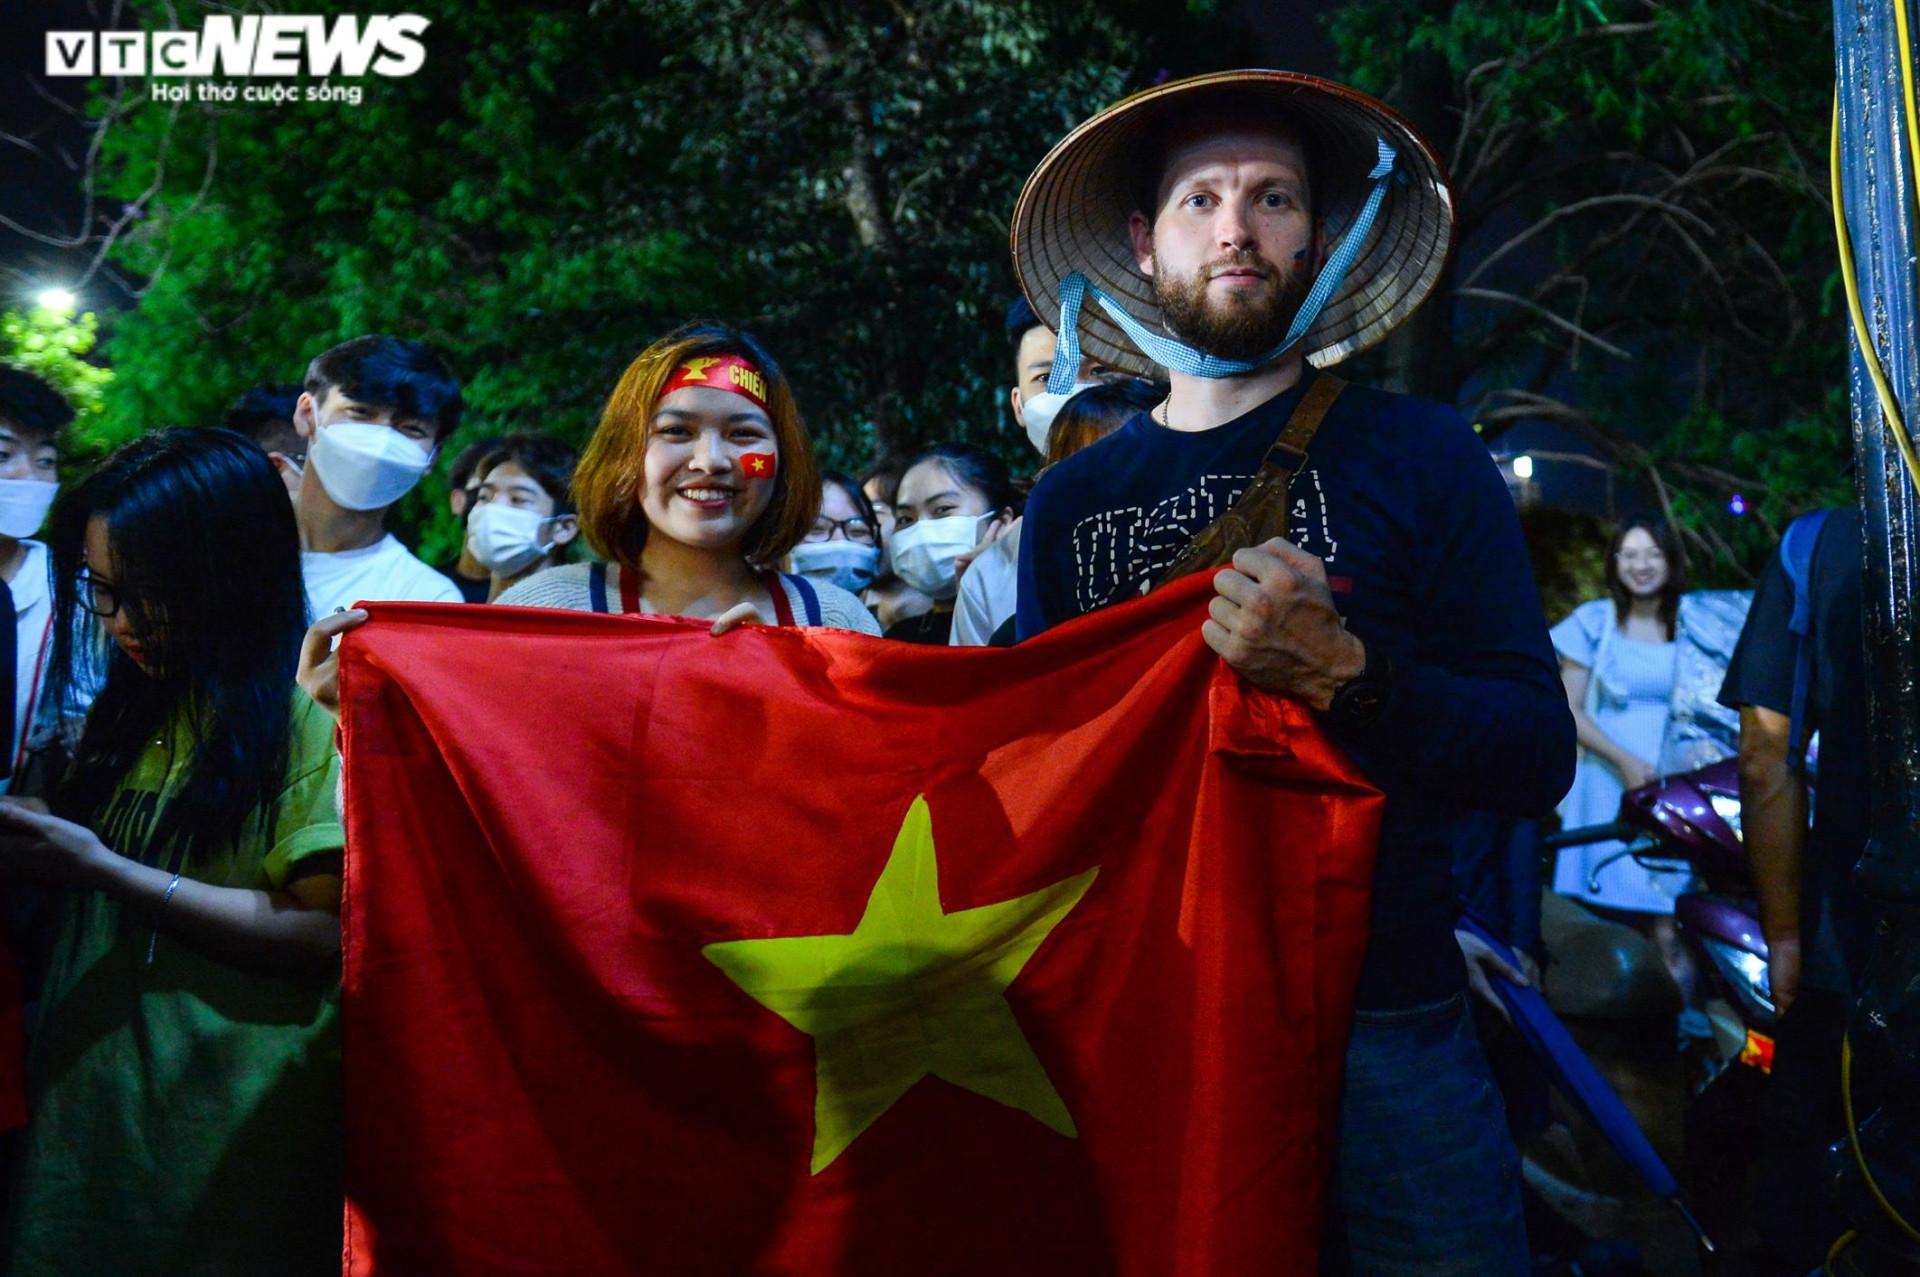 Hết mưa, người dân Hà Nội rủ nhau lên Bờ Hồ xem đội tuyển U23 đá chung kết - 6